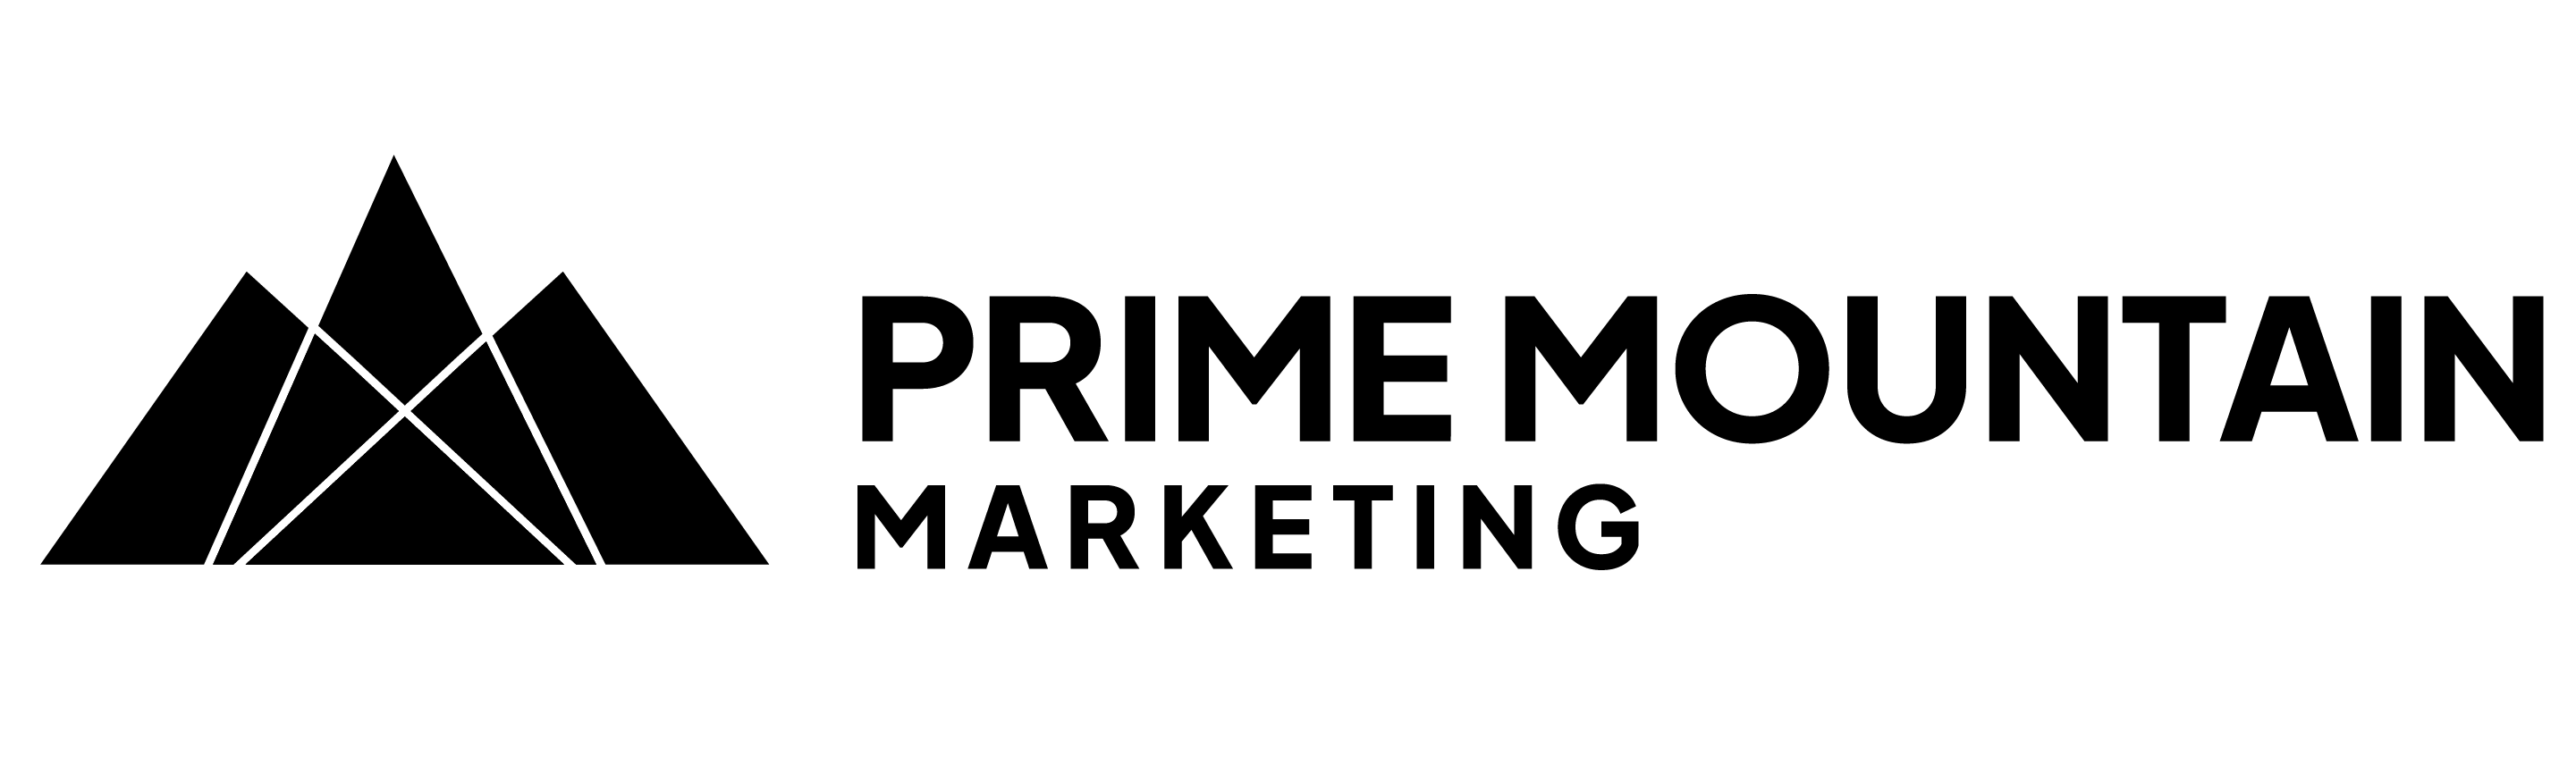 Prime Mountain Marketing